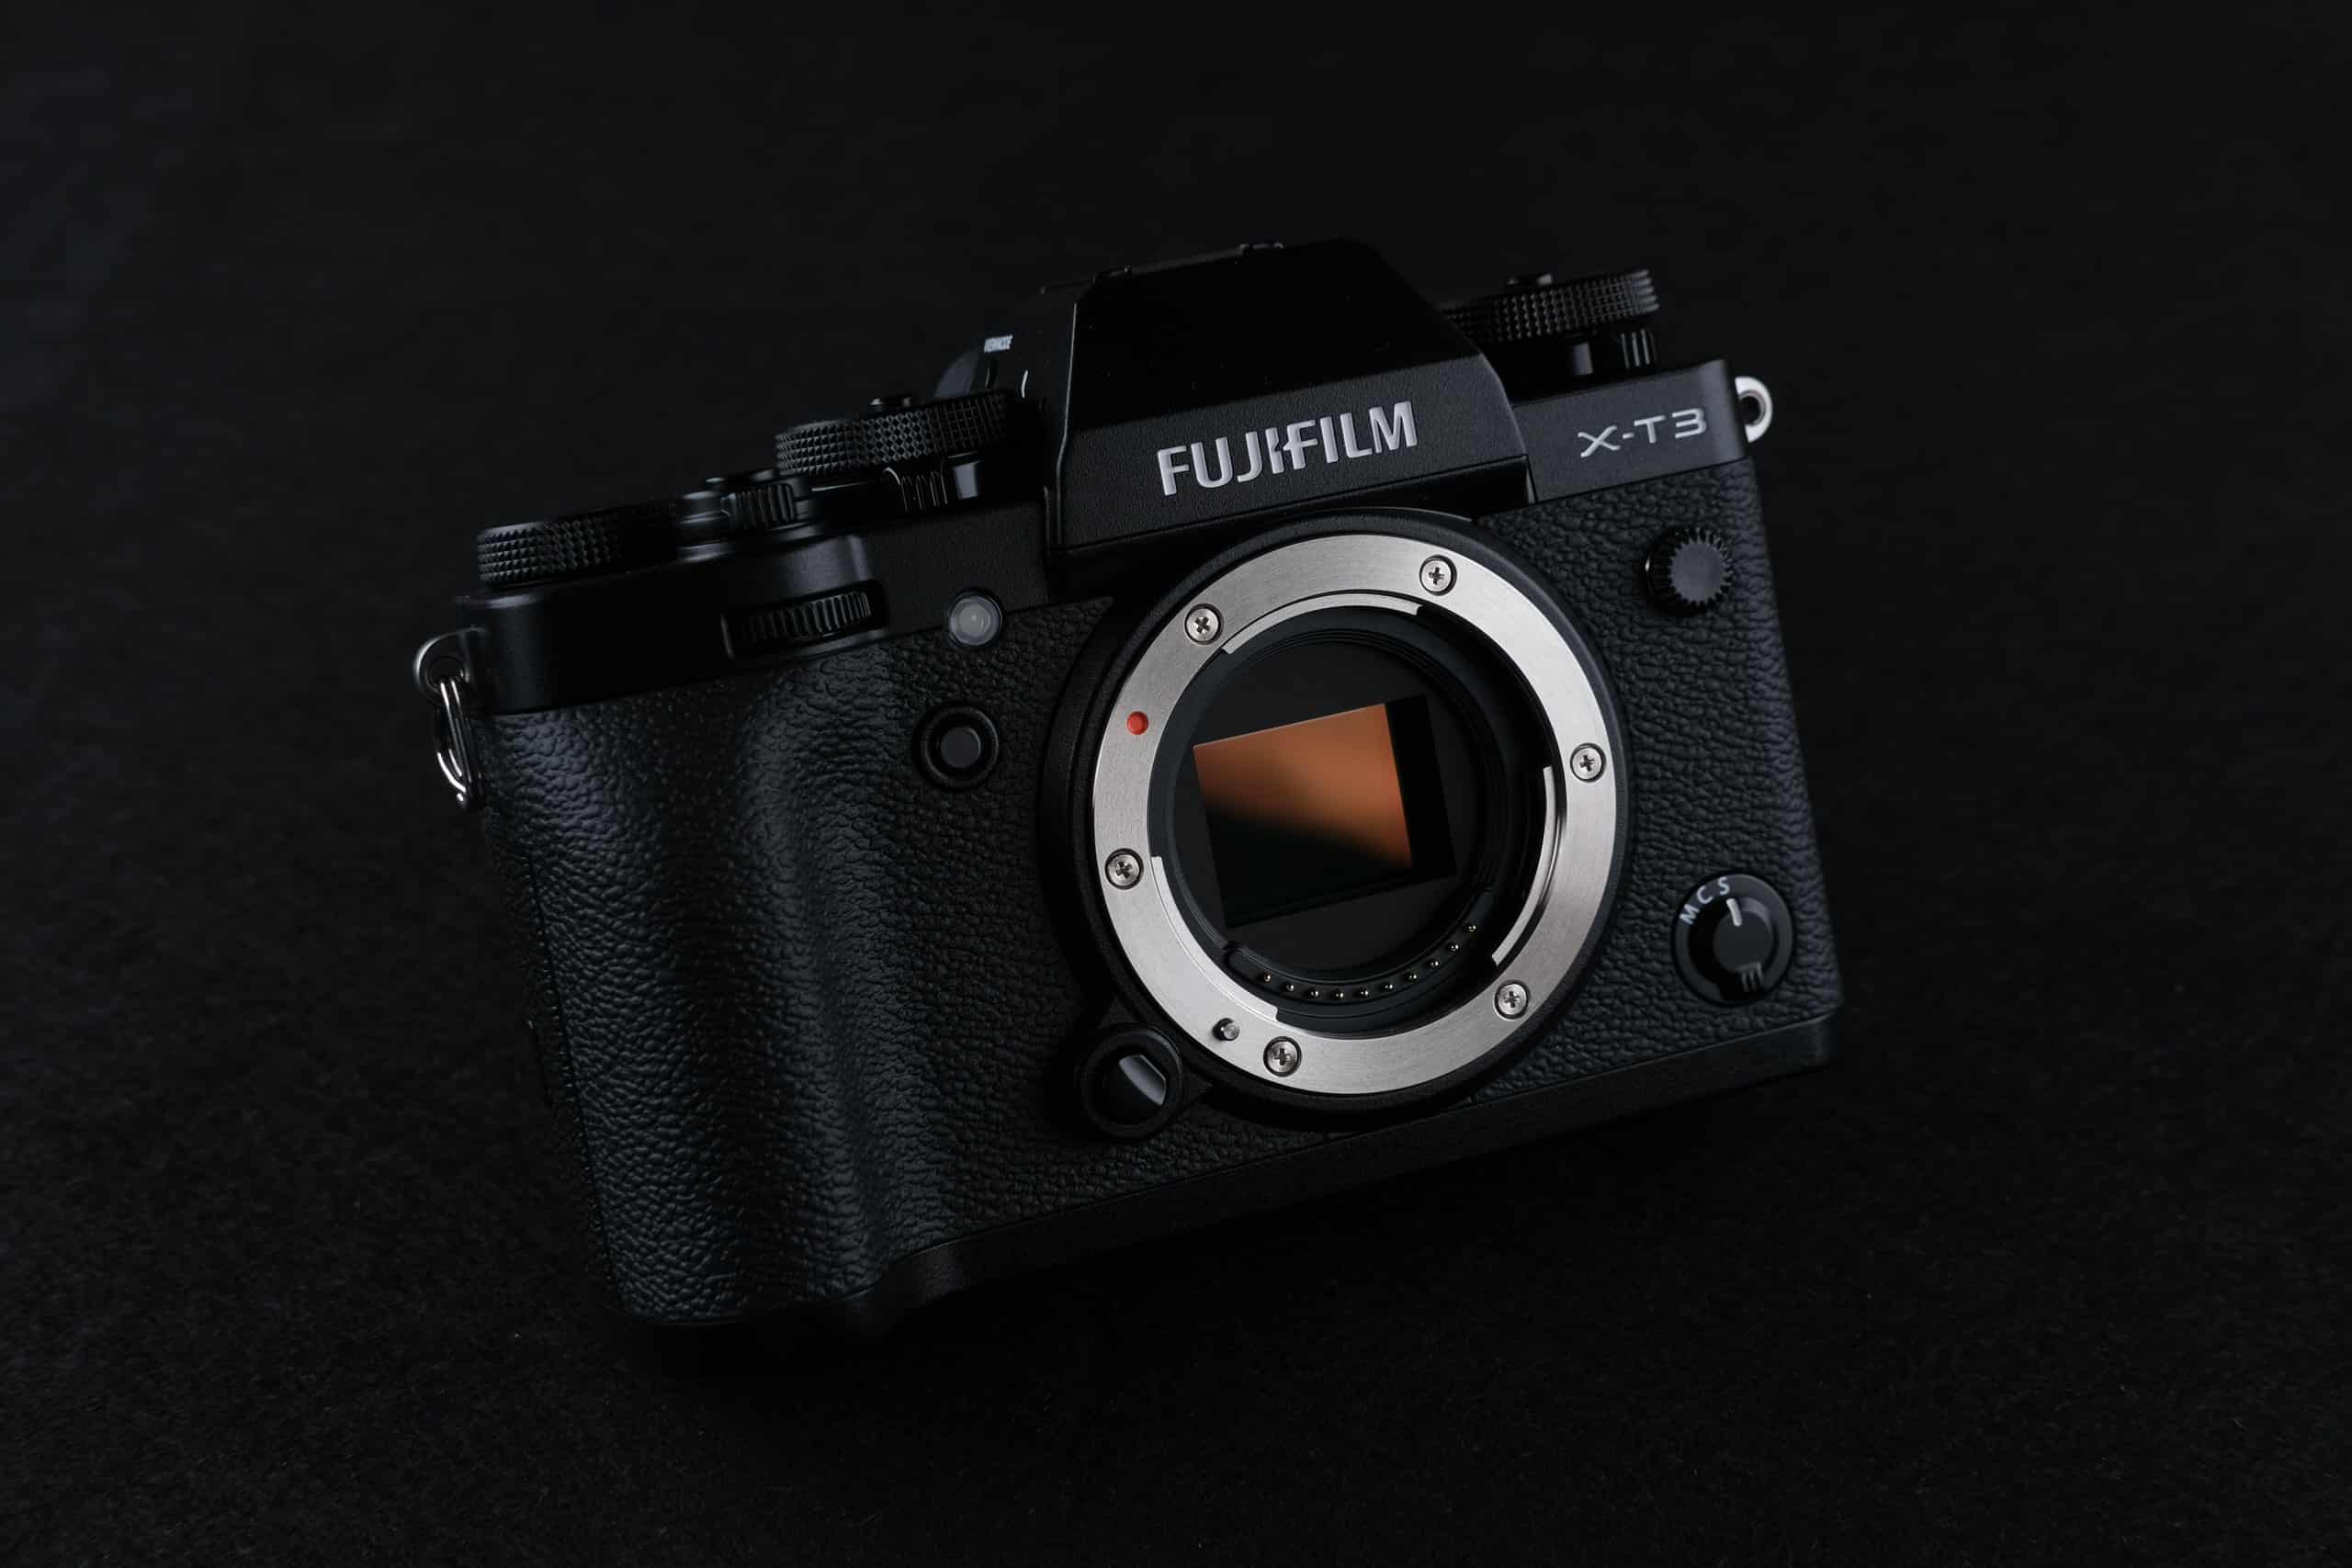 Fujifilm X-T3, GFX 50S và GFX 50R nhận cập nhật firmware mới, không có màu mới cho X-T3